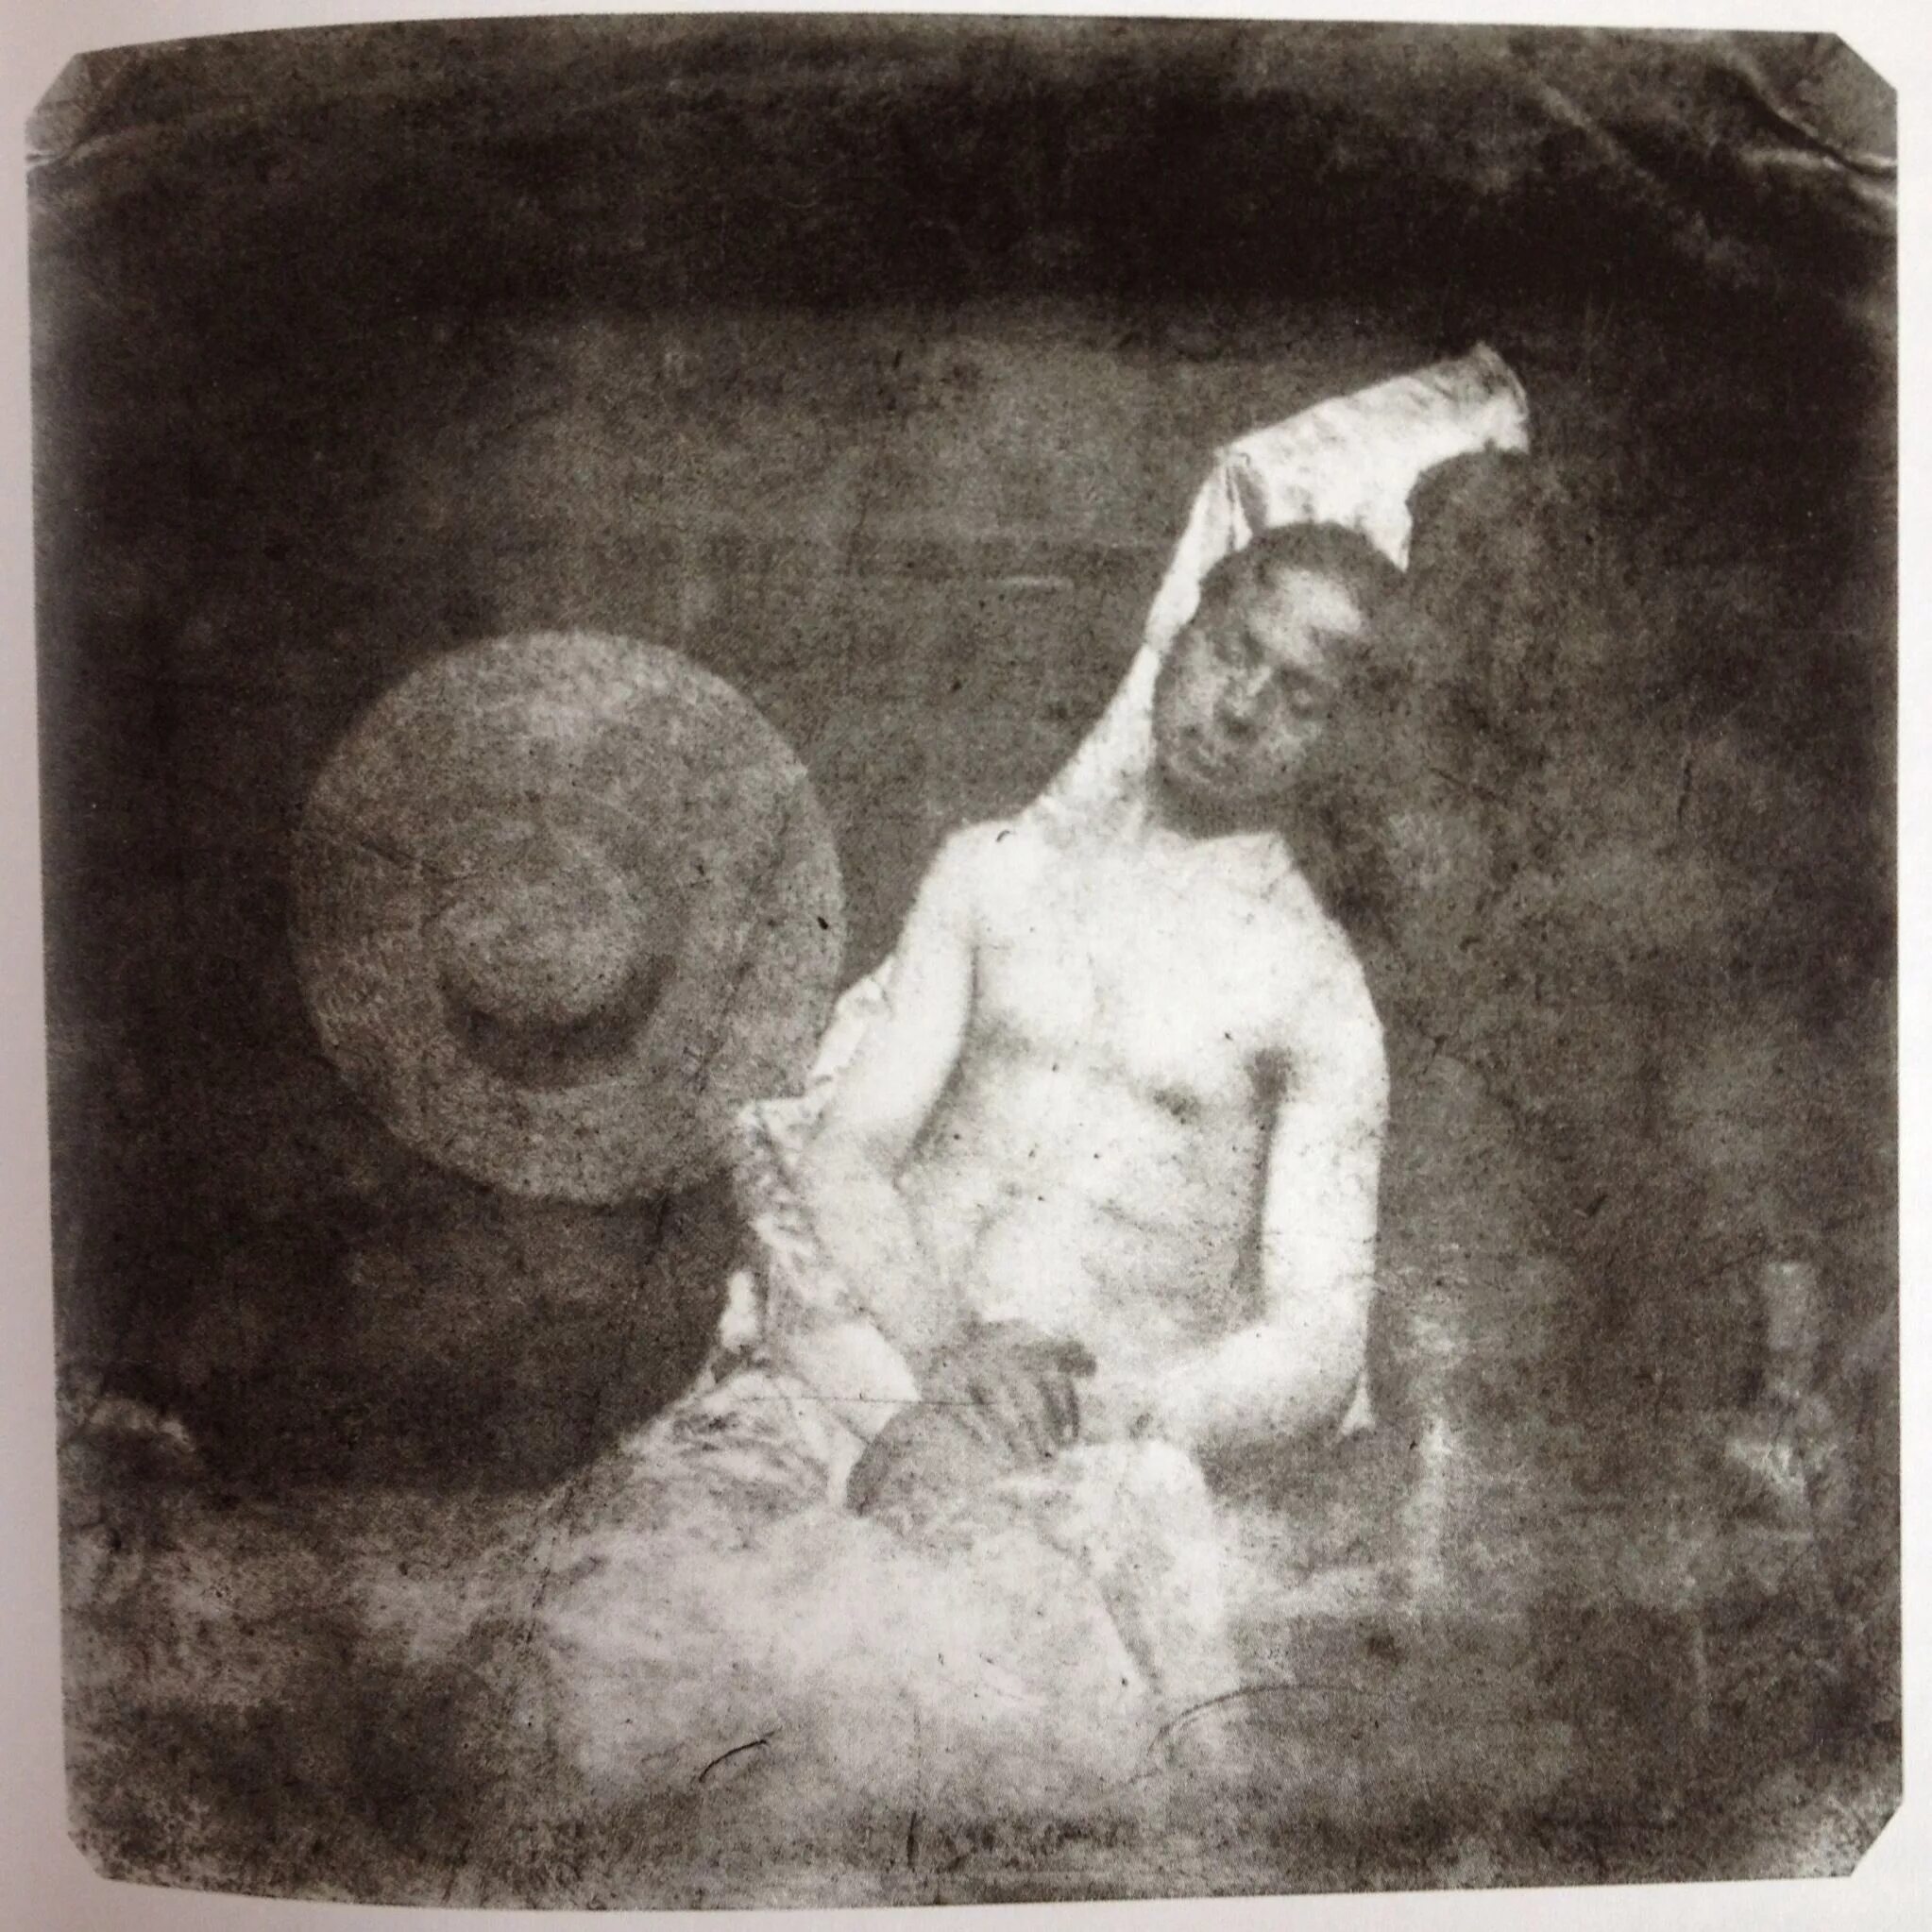 Автопортрет в образе утопленника (1840) Ипполита Баярда.